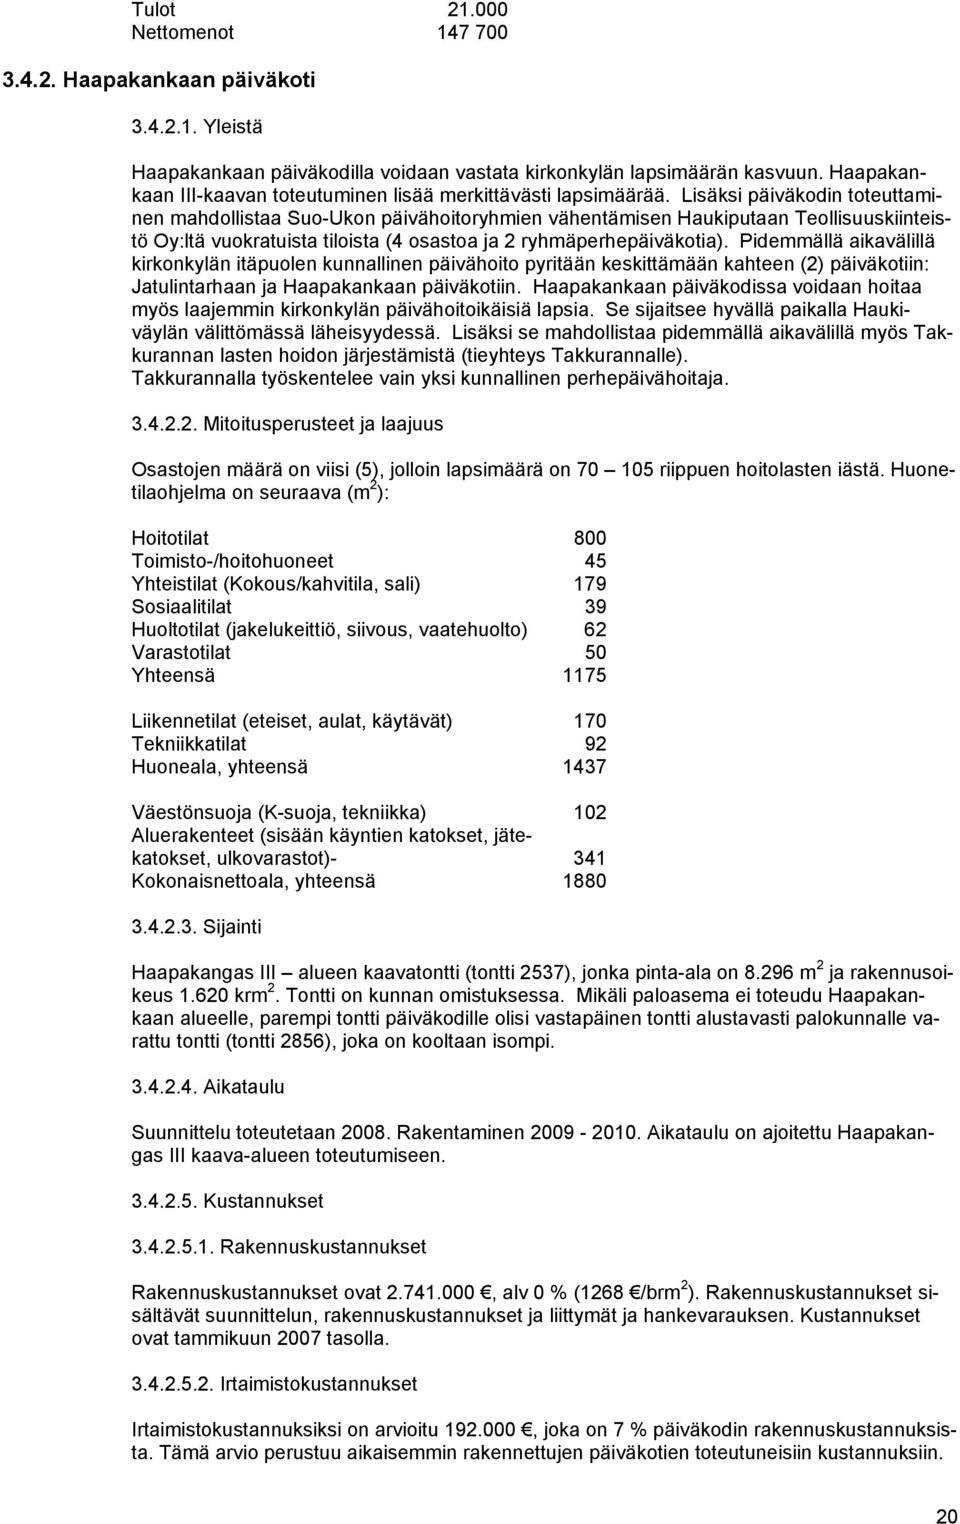 Lisäksi päiväkodin toteuttaminen mahdollistaa Suo-Ukon päivähoitoryhmien vähentämisen Haukiputaan Teollisuuskiinteistö Oy:ltä vuokratuista tiloista (4 osastoa ja 2 ryhmäperhepäiväkotia).